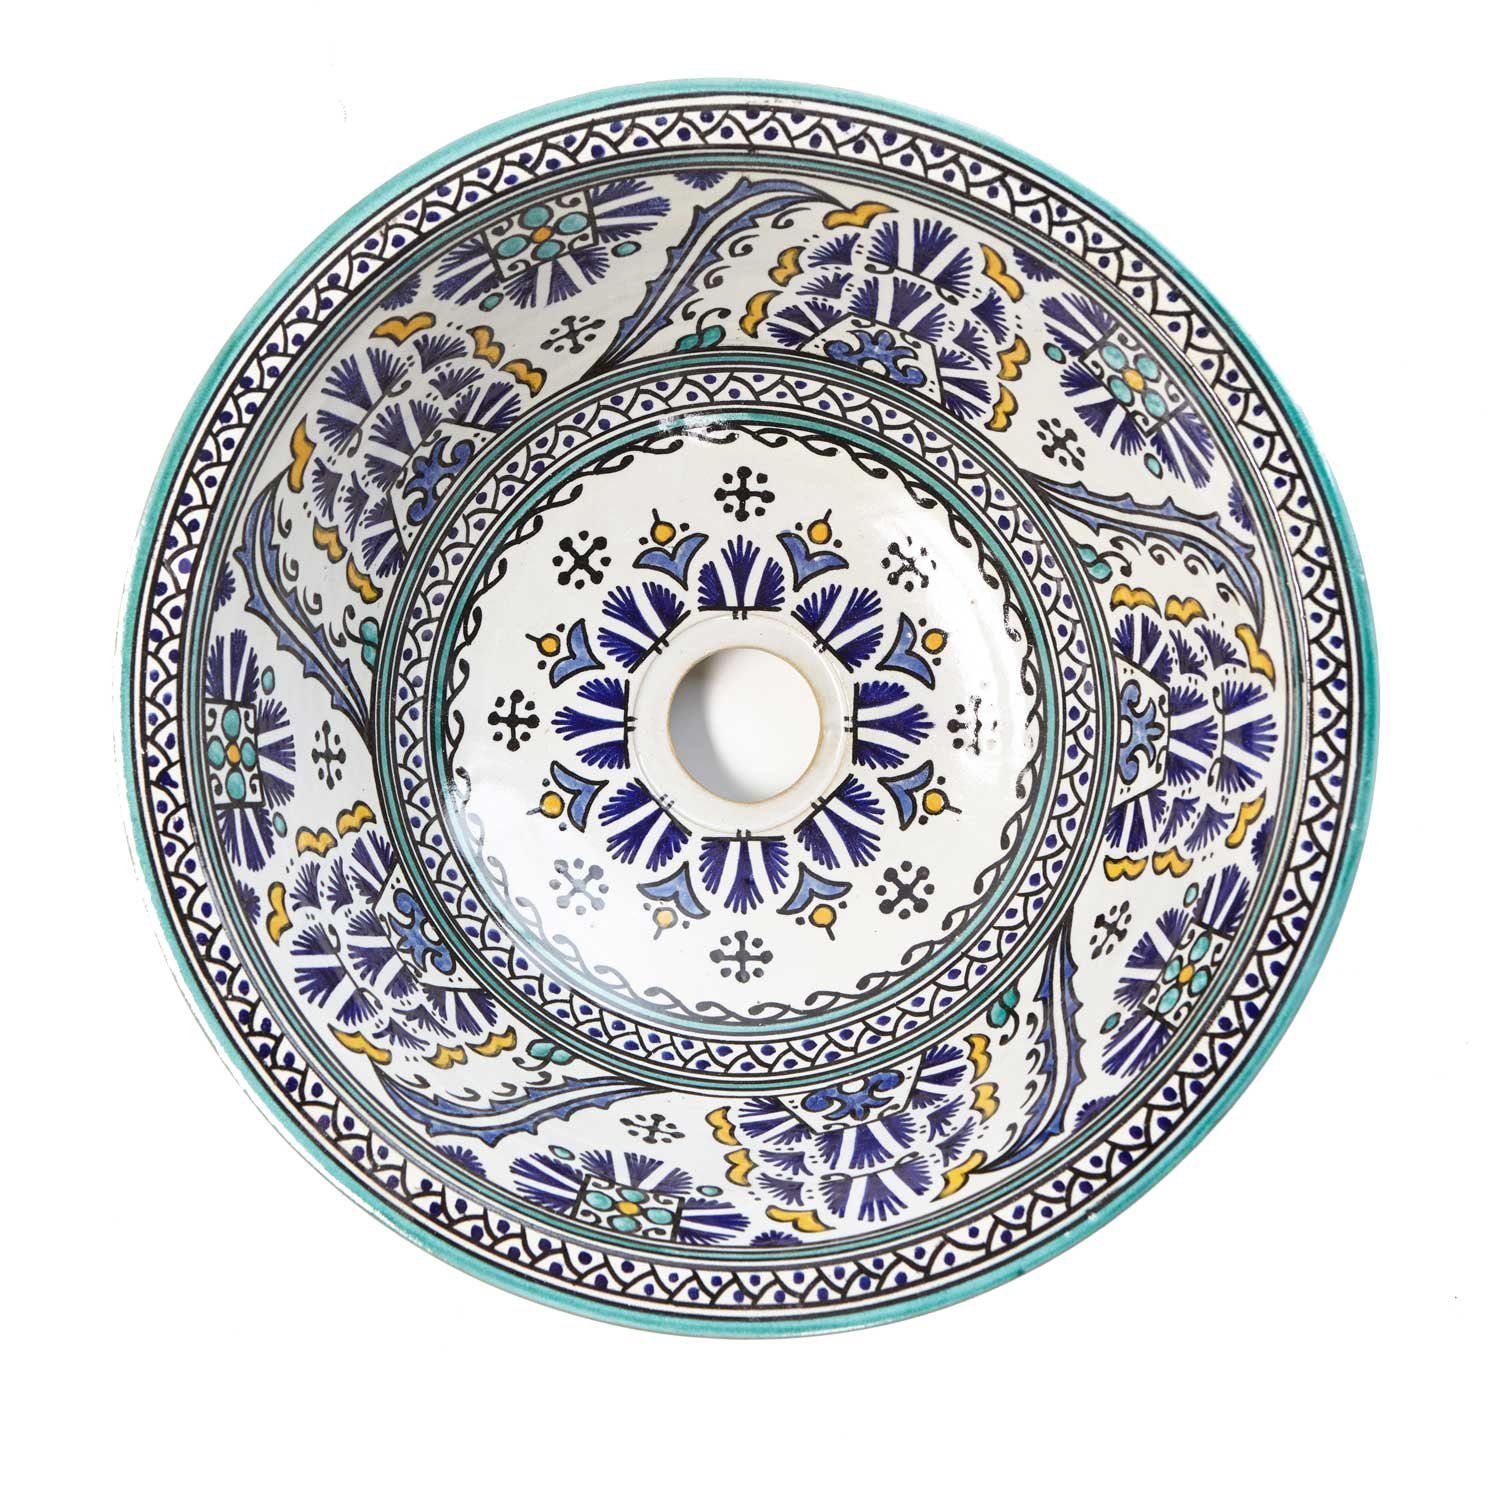 Casa Moro Waschbecken Marokkanisches Keramik-Waschbecken Fes88 Ø 35 cm rund bunt handbemalt (Kunsthandwerk), Marokkanisches Handwaschbecken für Küche Badezimmer, WB35288